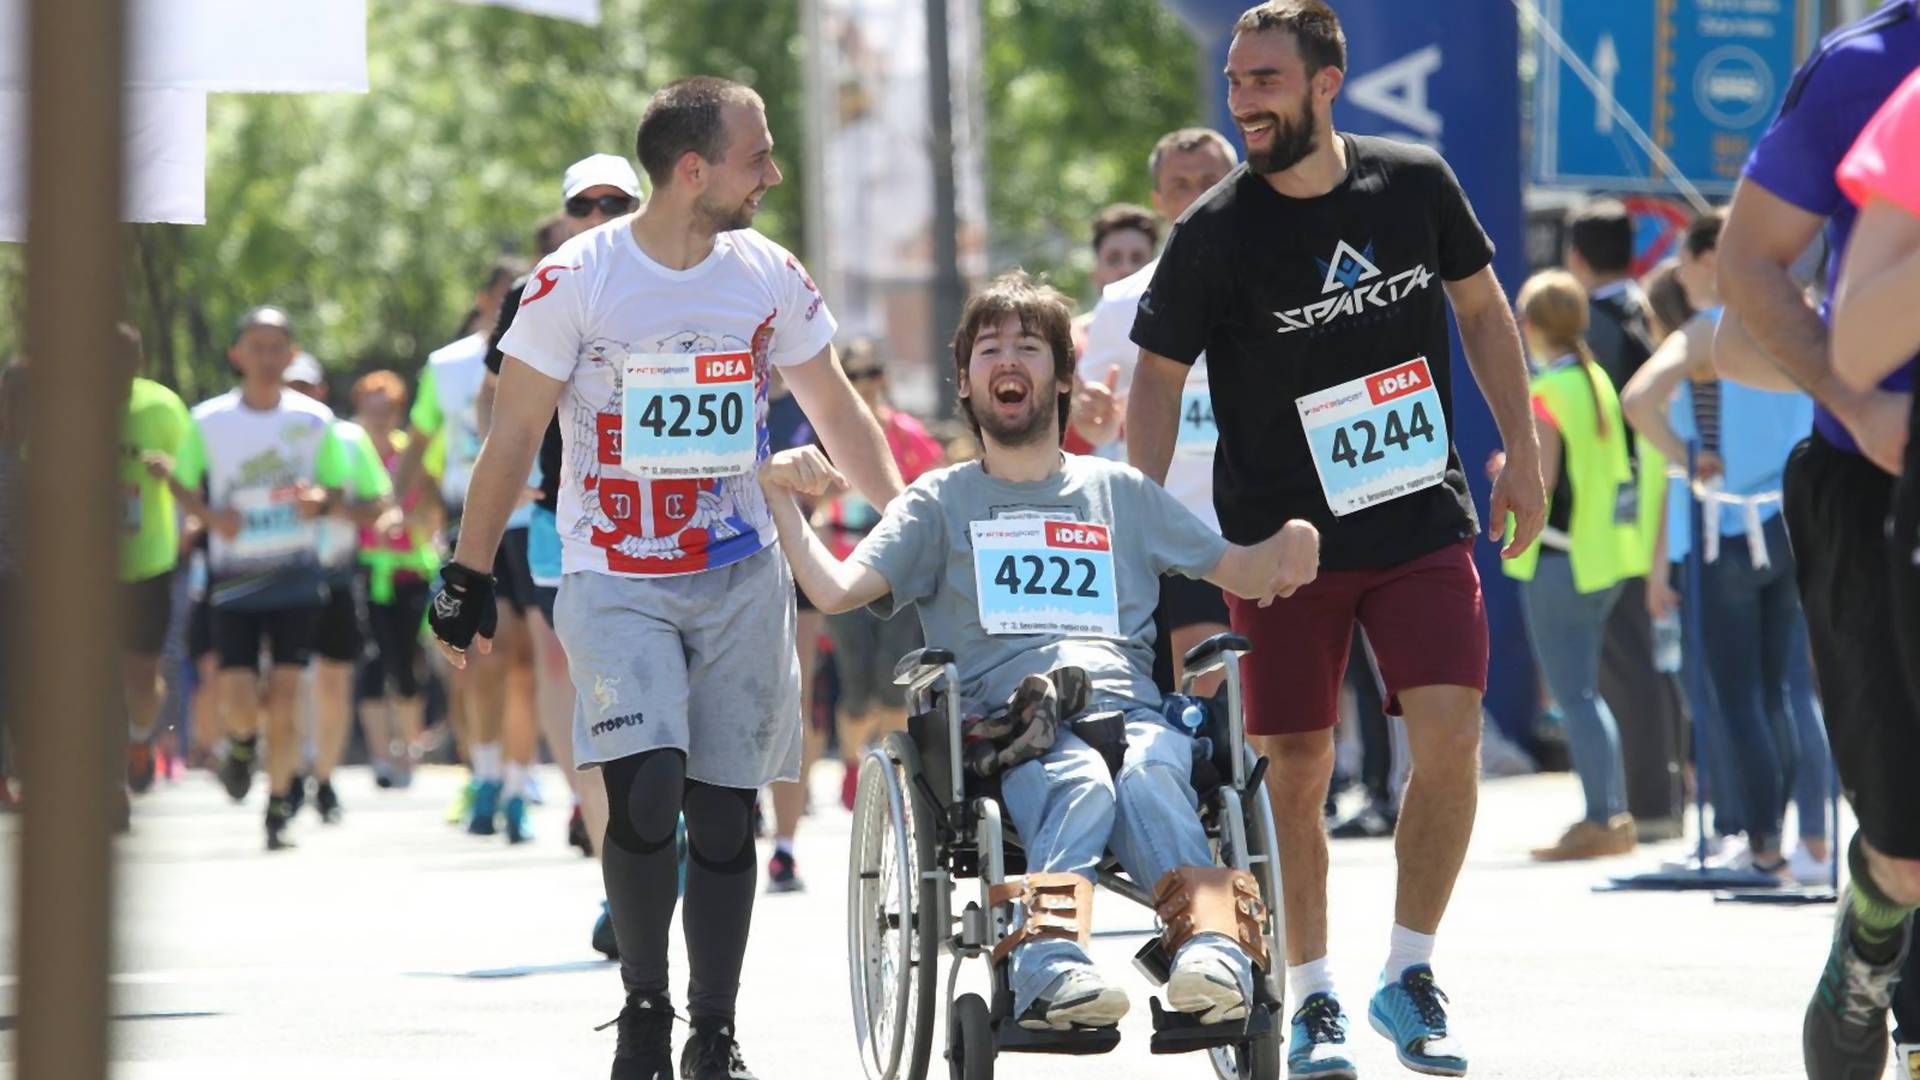 Aleksina slika s maratona dokazuje da granice mogućeg postoje samo u glavi